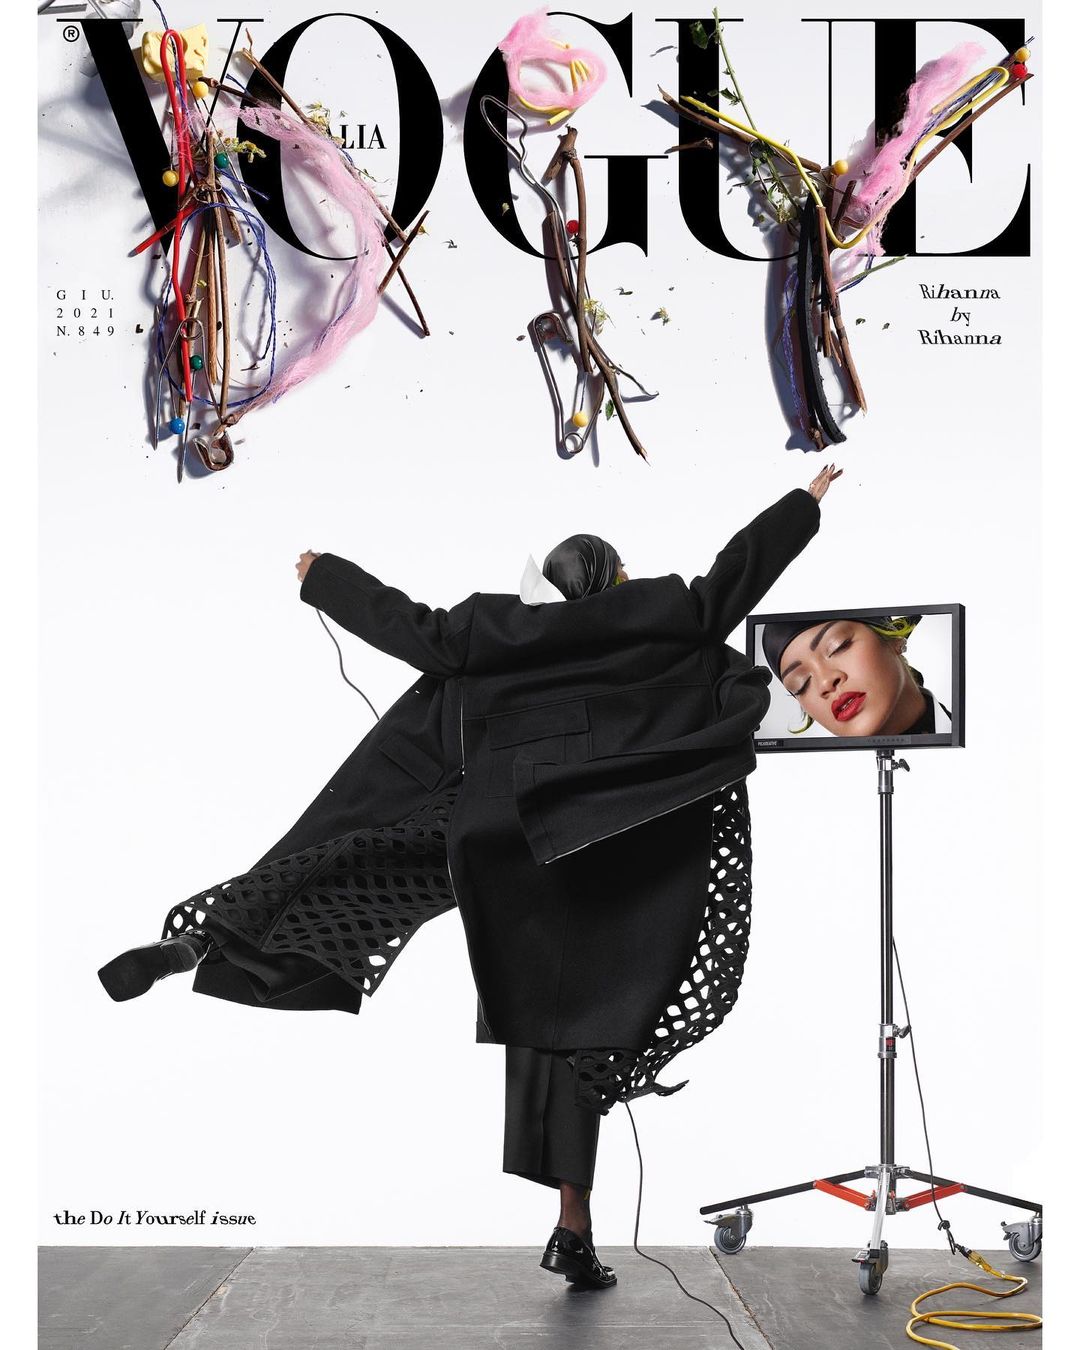 Thương hiệu mỹ phẩm Fenty Beauty, hãng mỹ phẩm của Rihanna là nhà tài trợ cho tạp chí Vogue Italia số mới nhất.